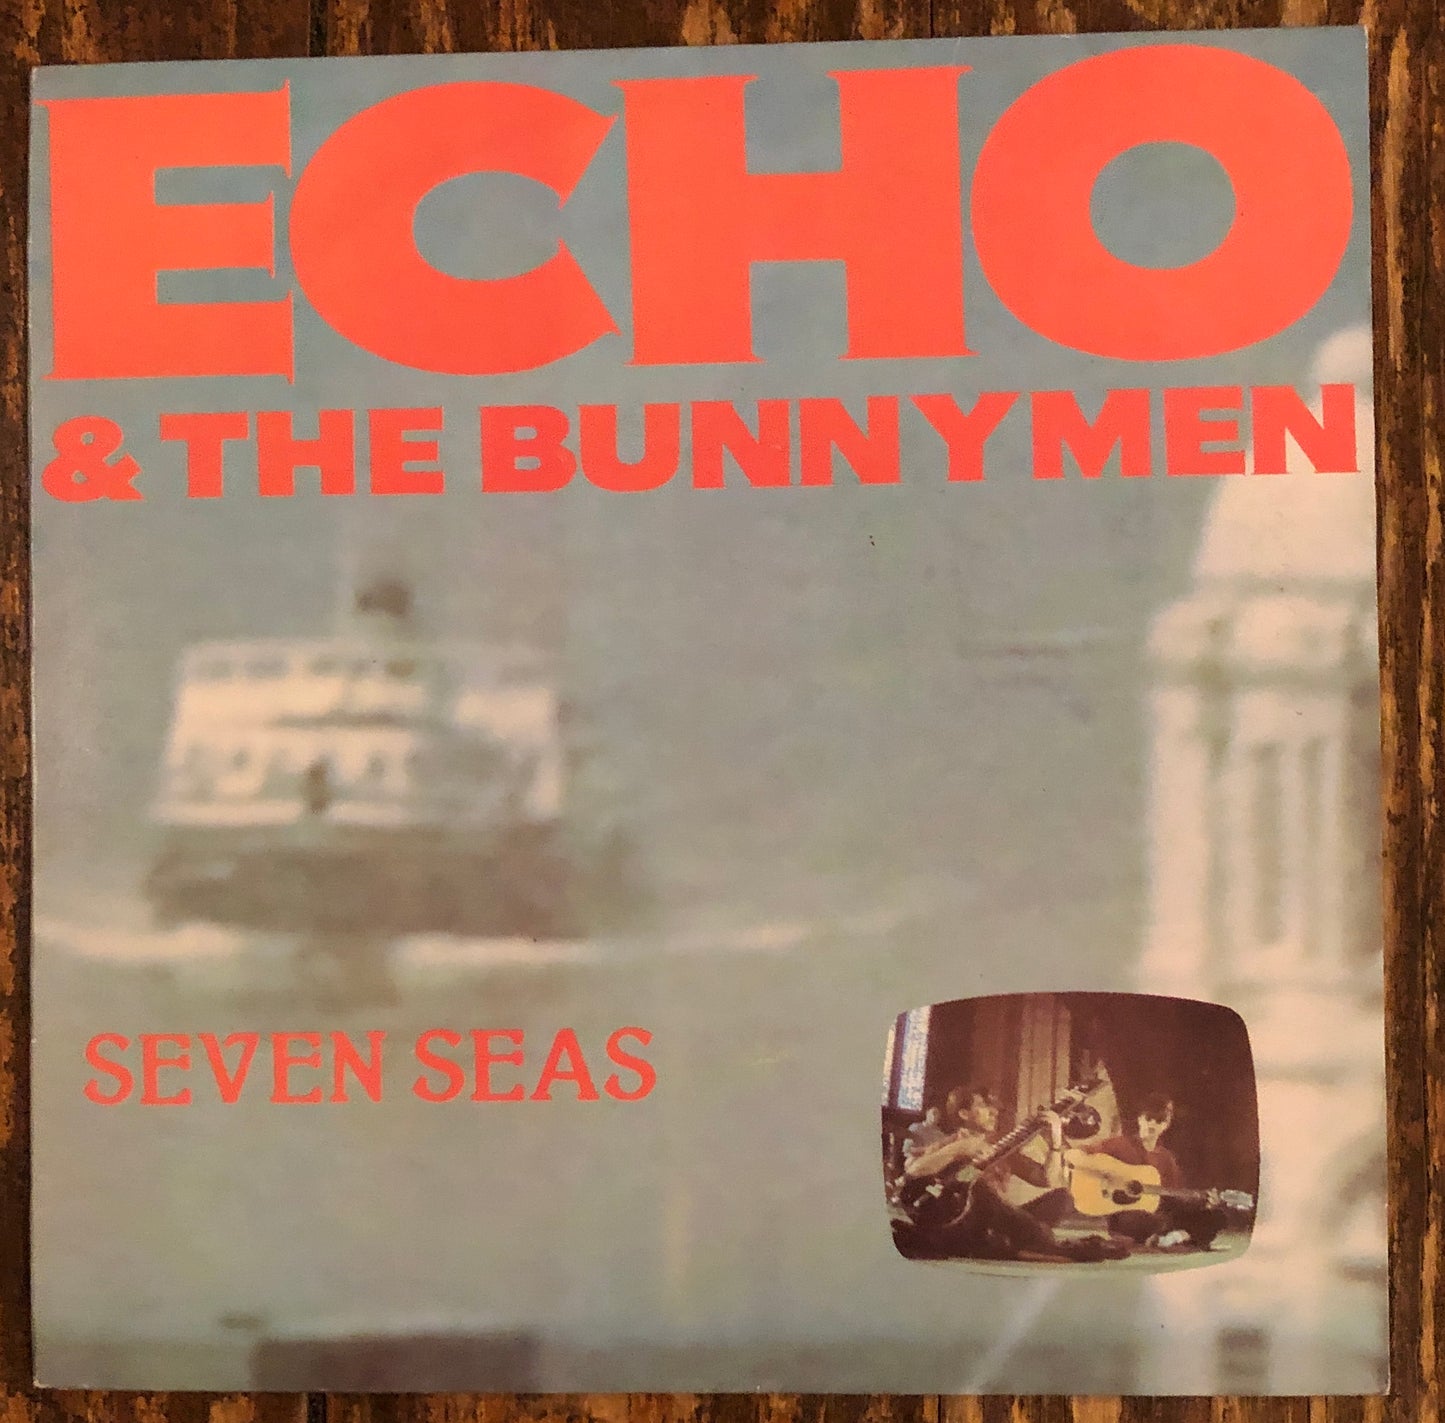 ECHO & THE BUNNYMEN "Seven Seas"